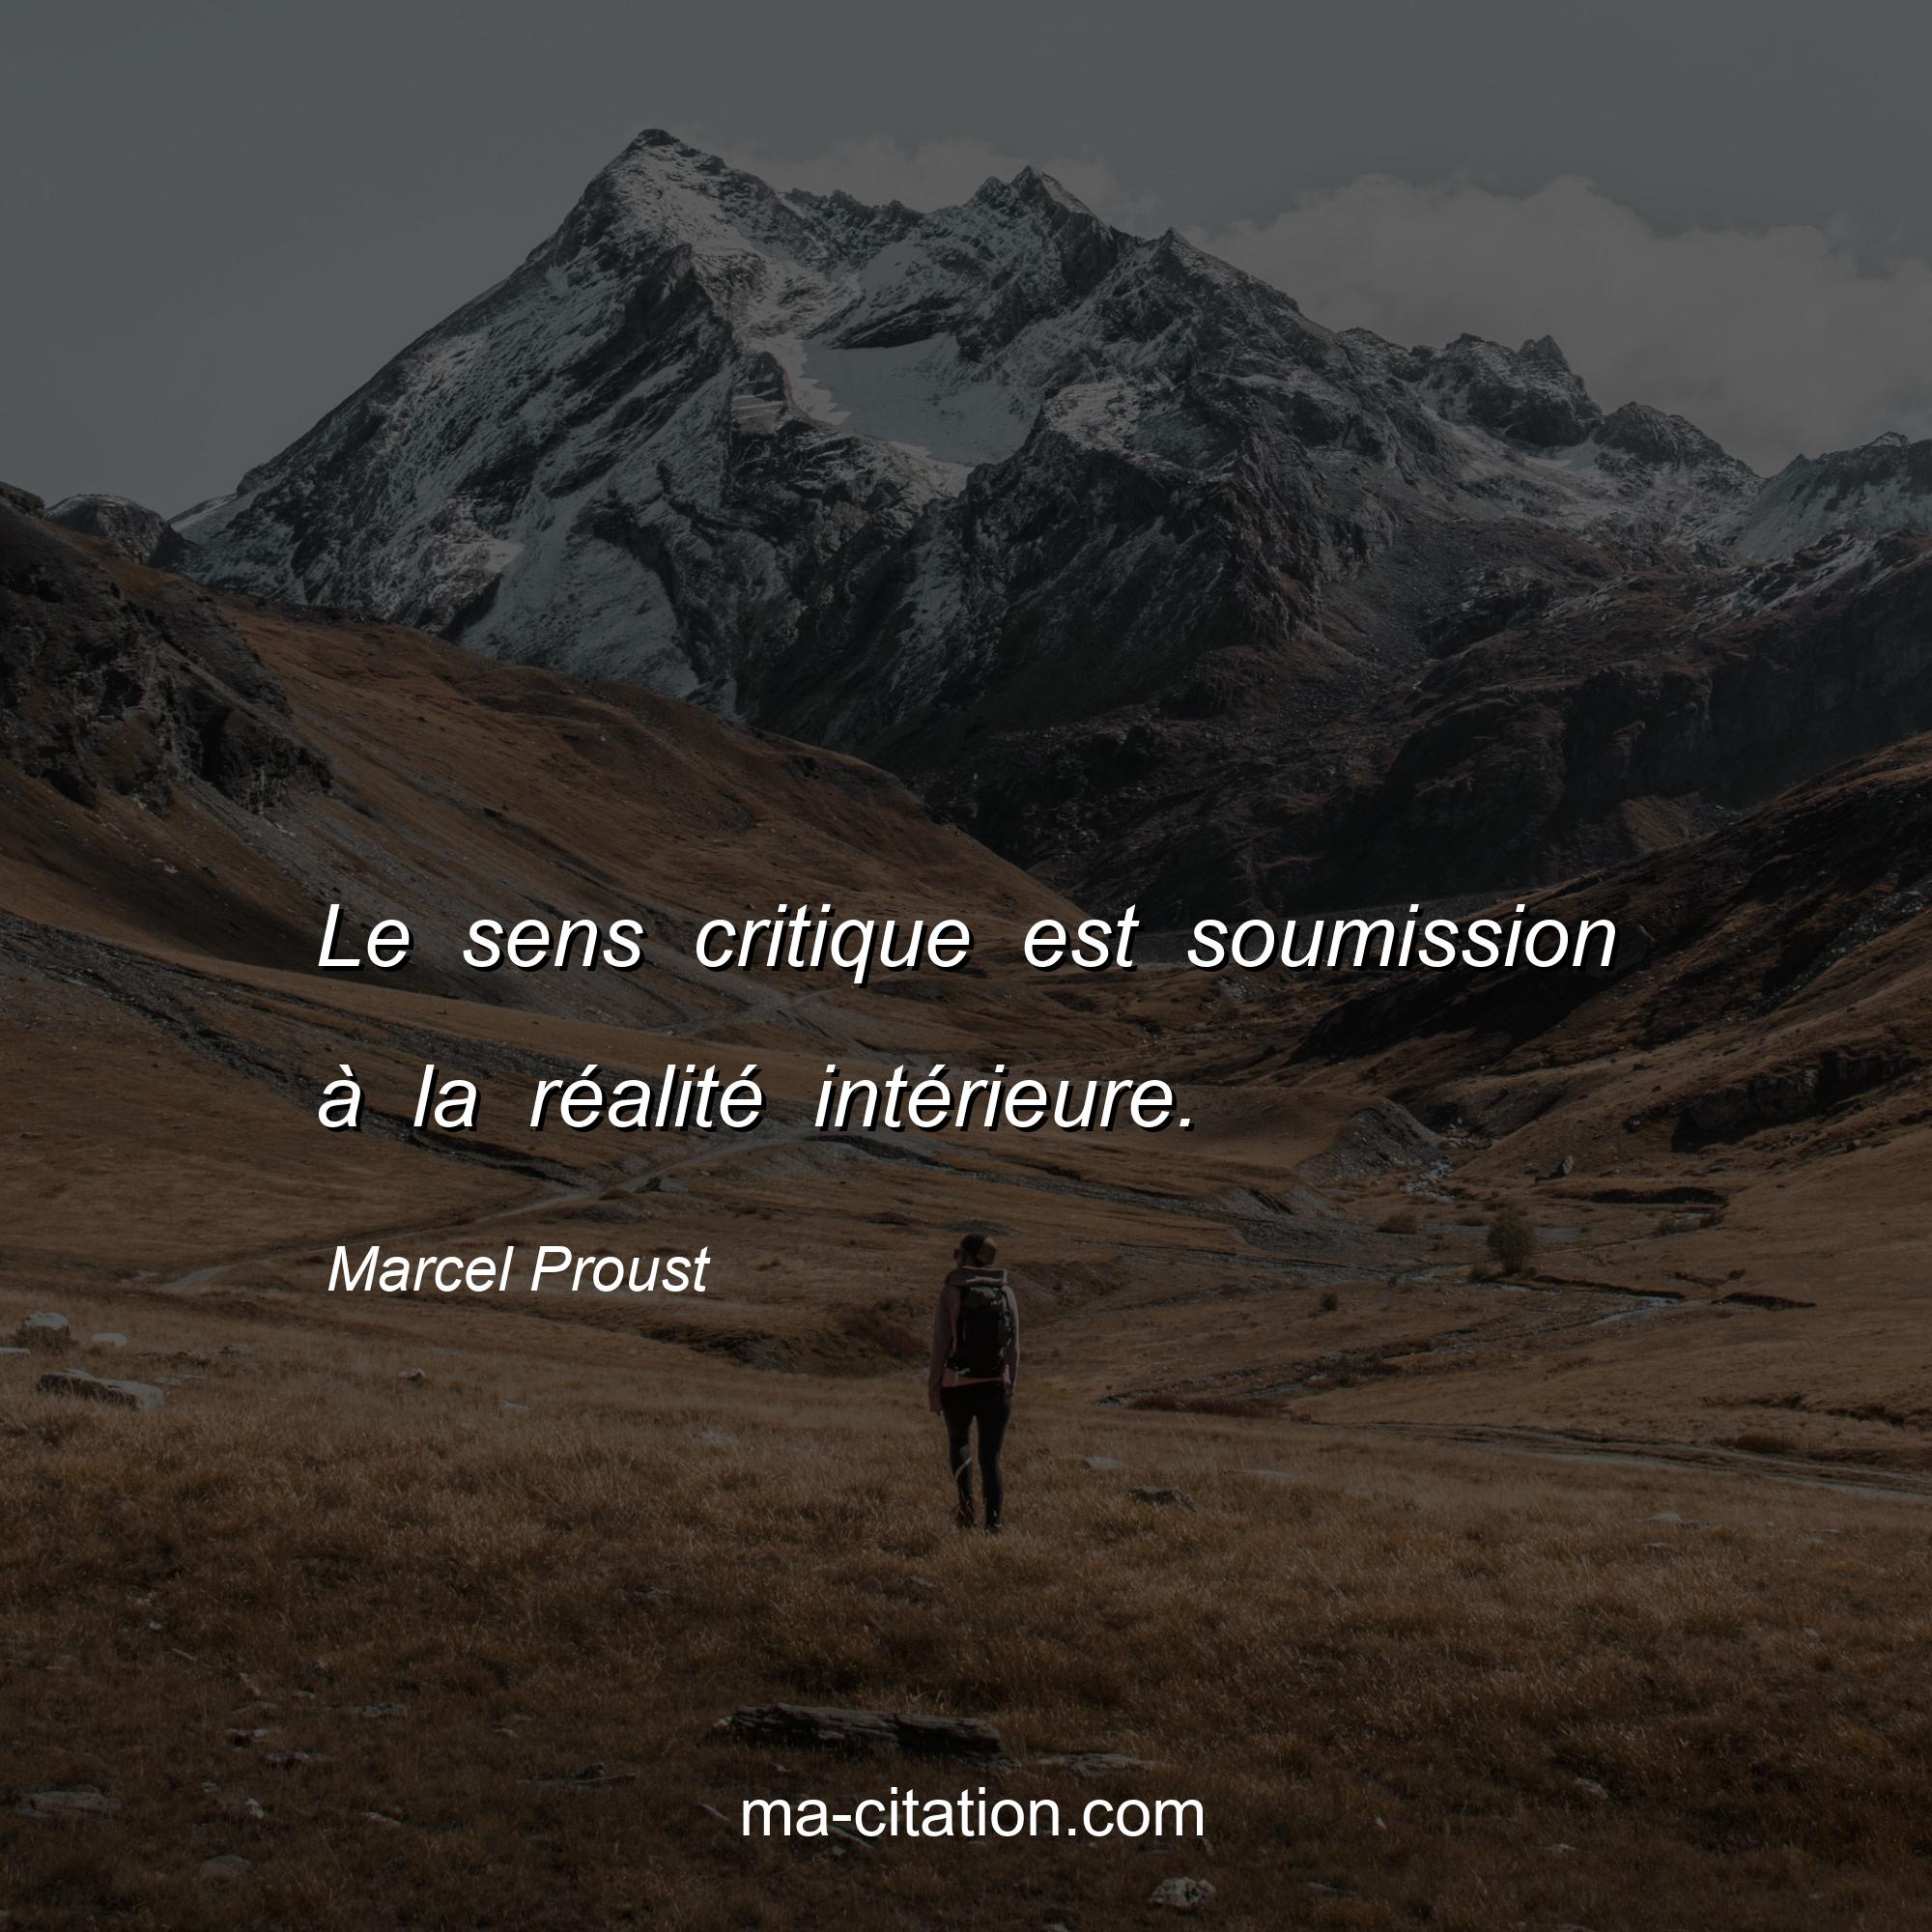 Marcel Proust : Le sens critique est soumission à la réalité intérieure.